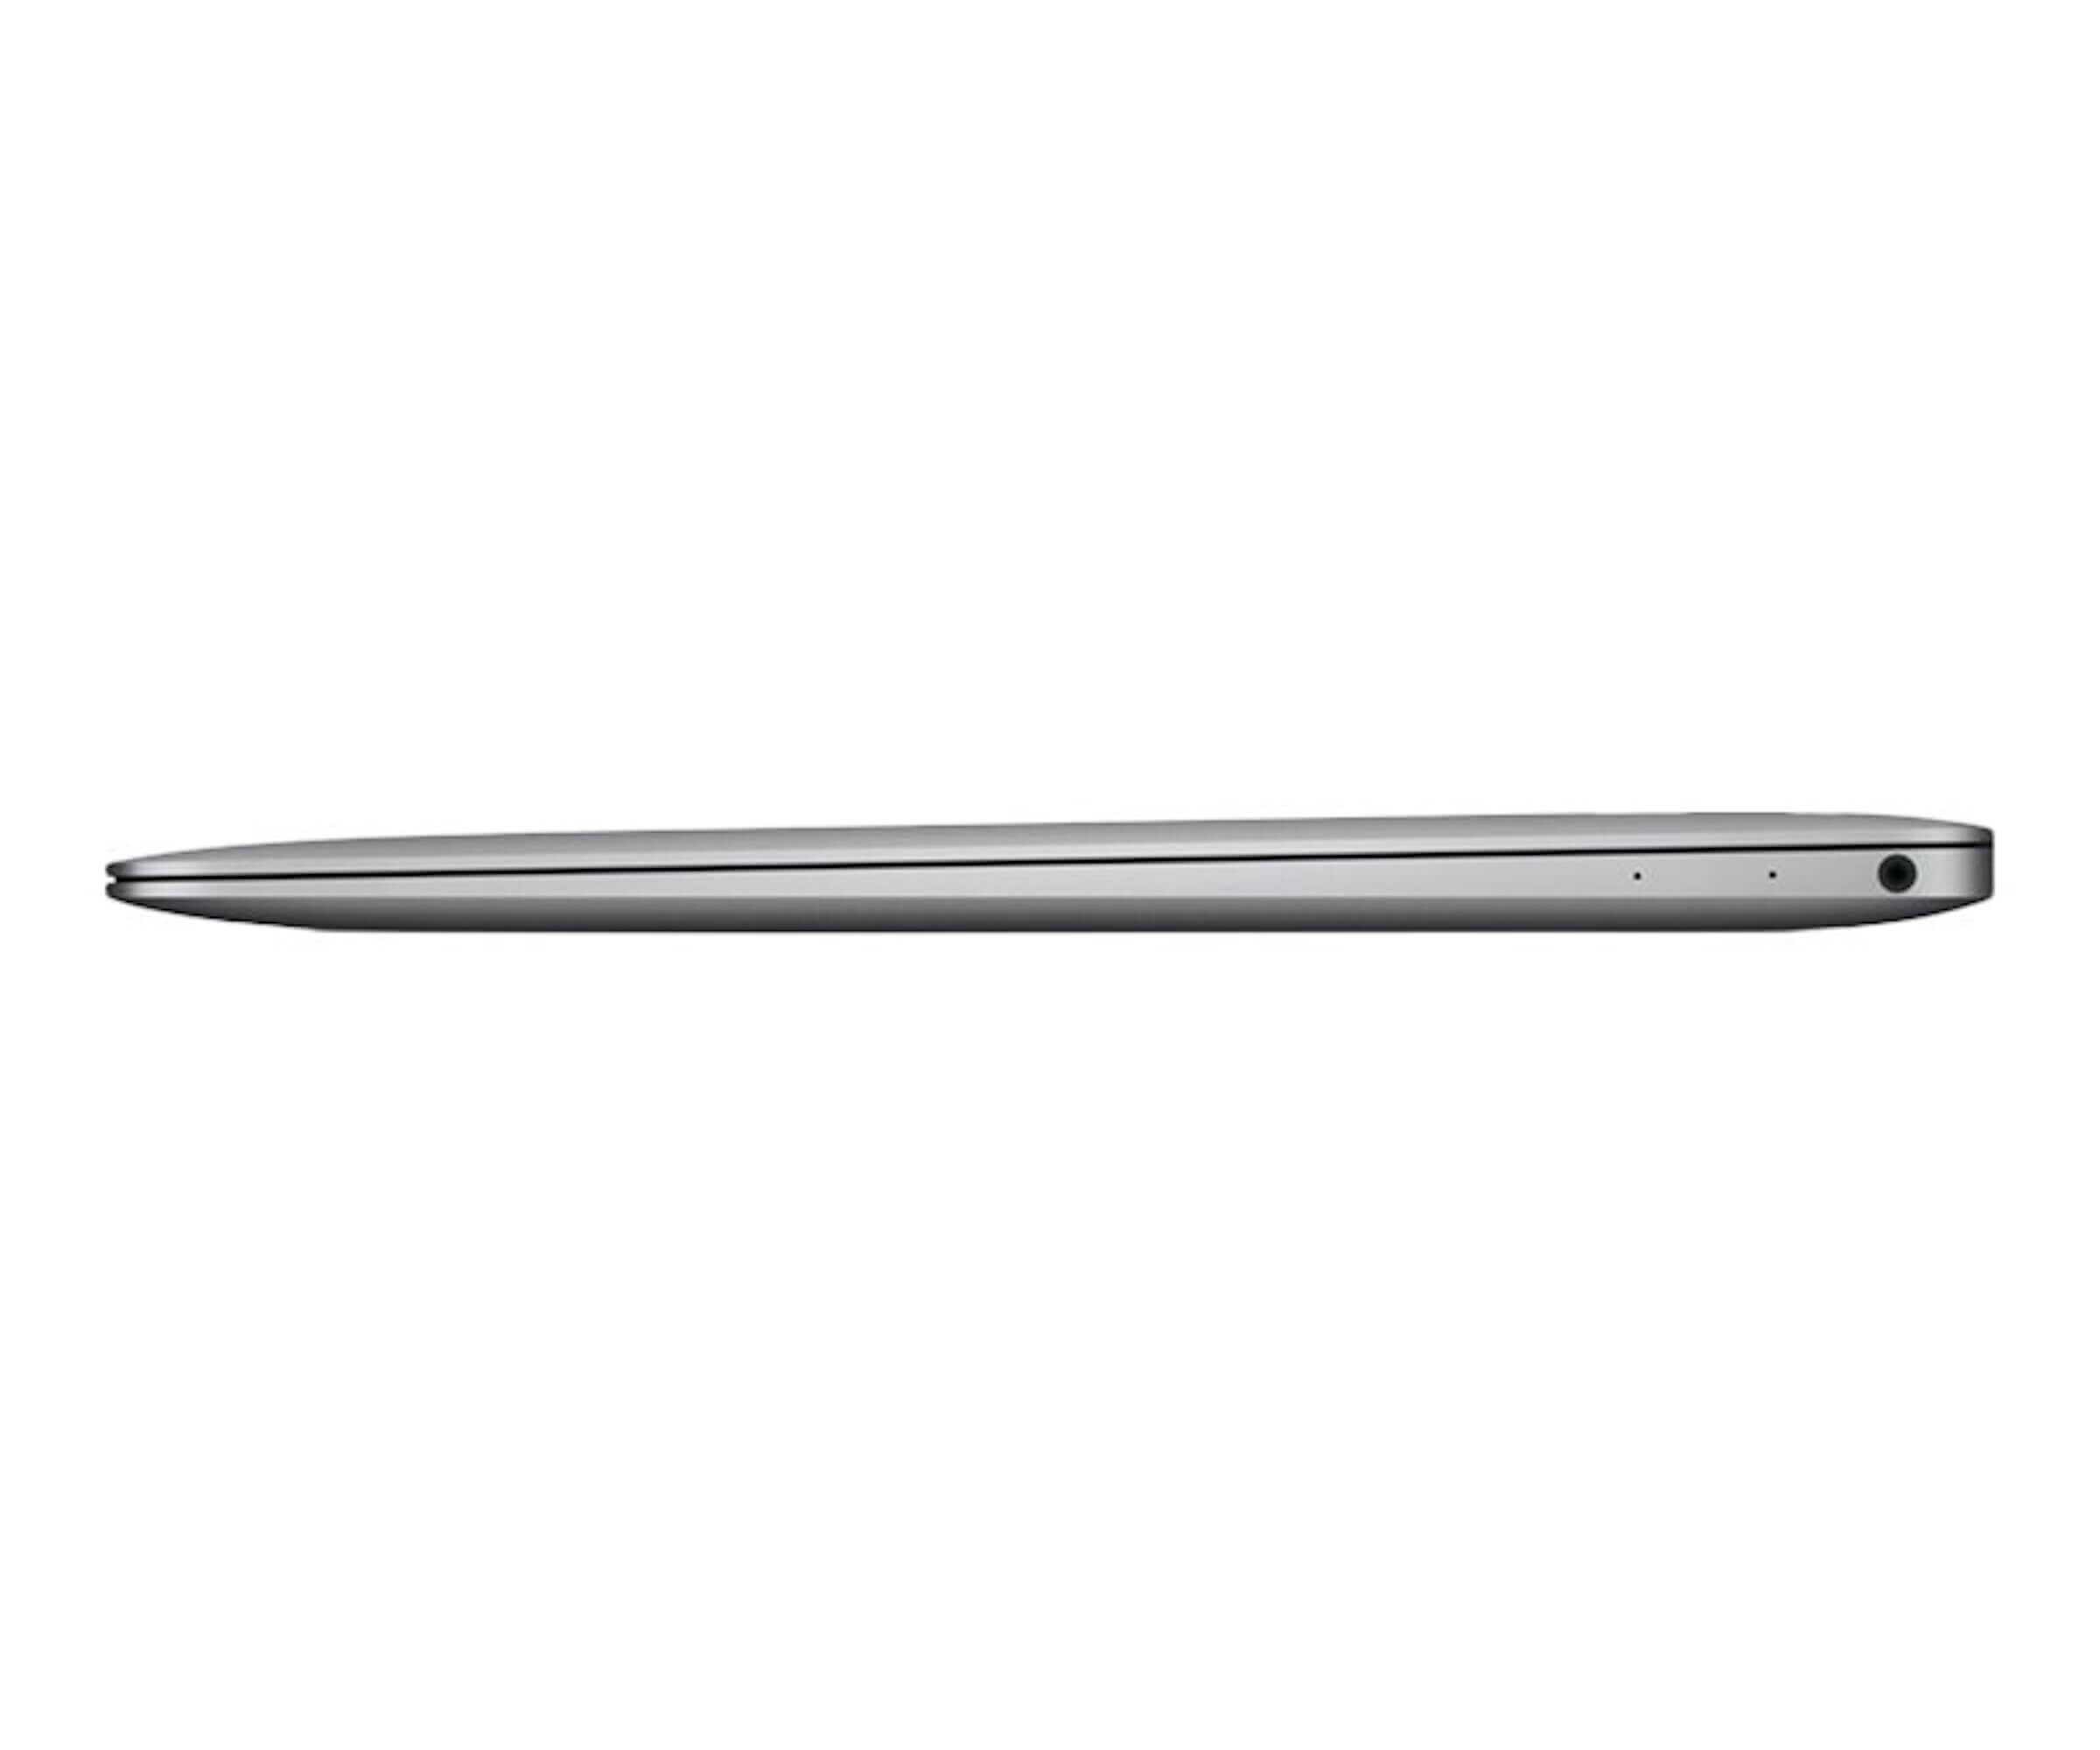 Ноутбук apple macbook air 13 retina (2020 года) z0yj000sz space grey — купить в городе химки